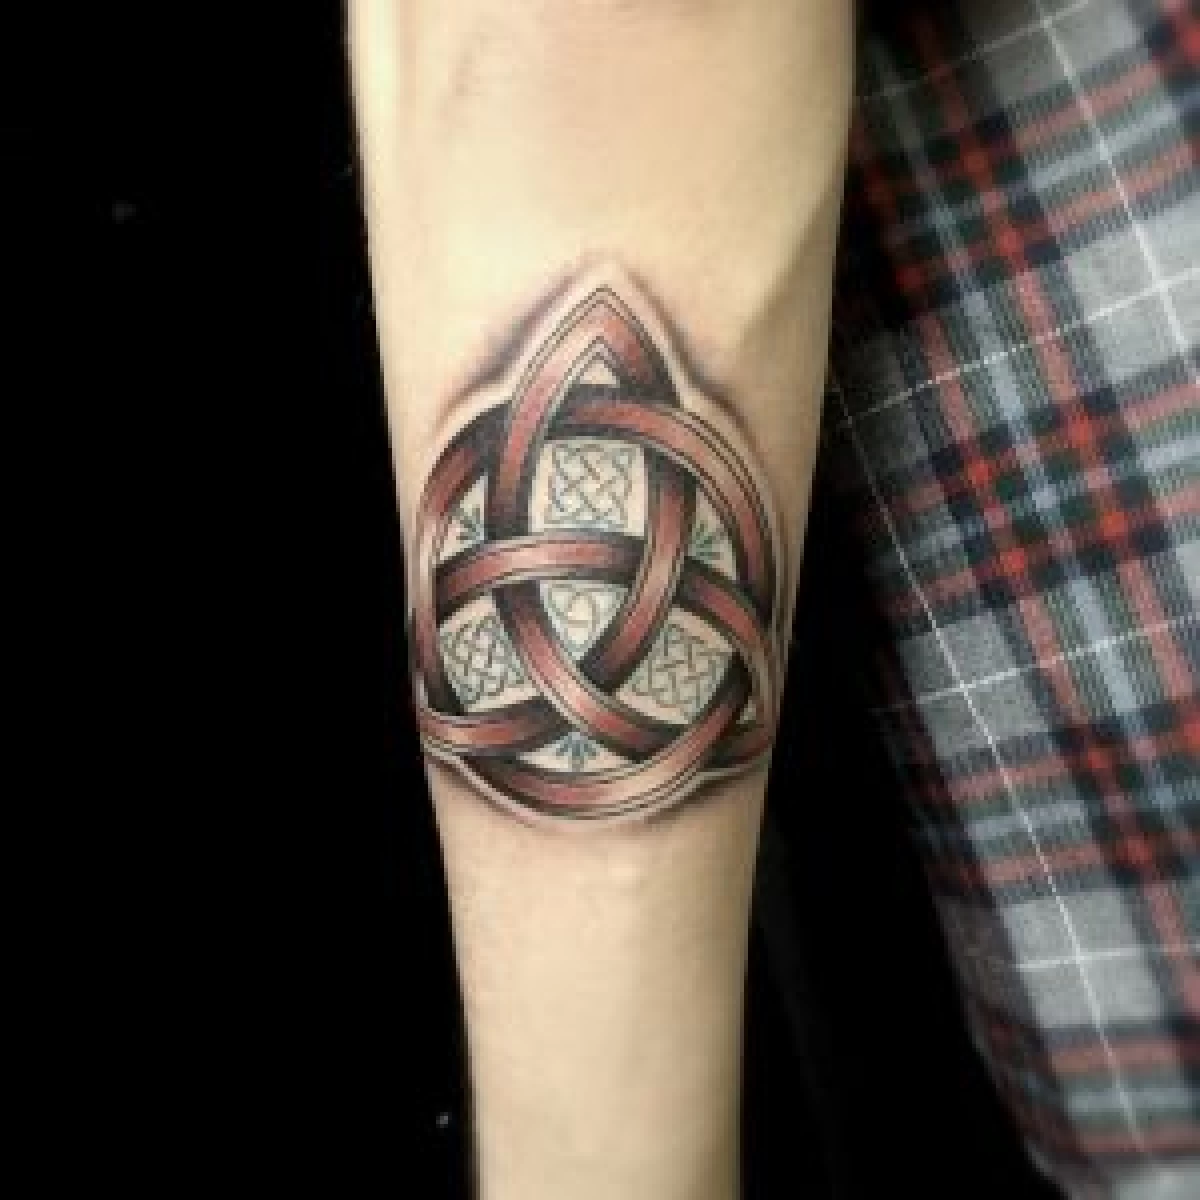 celtic heart tattoos for men